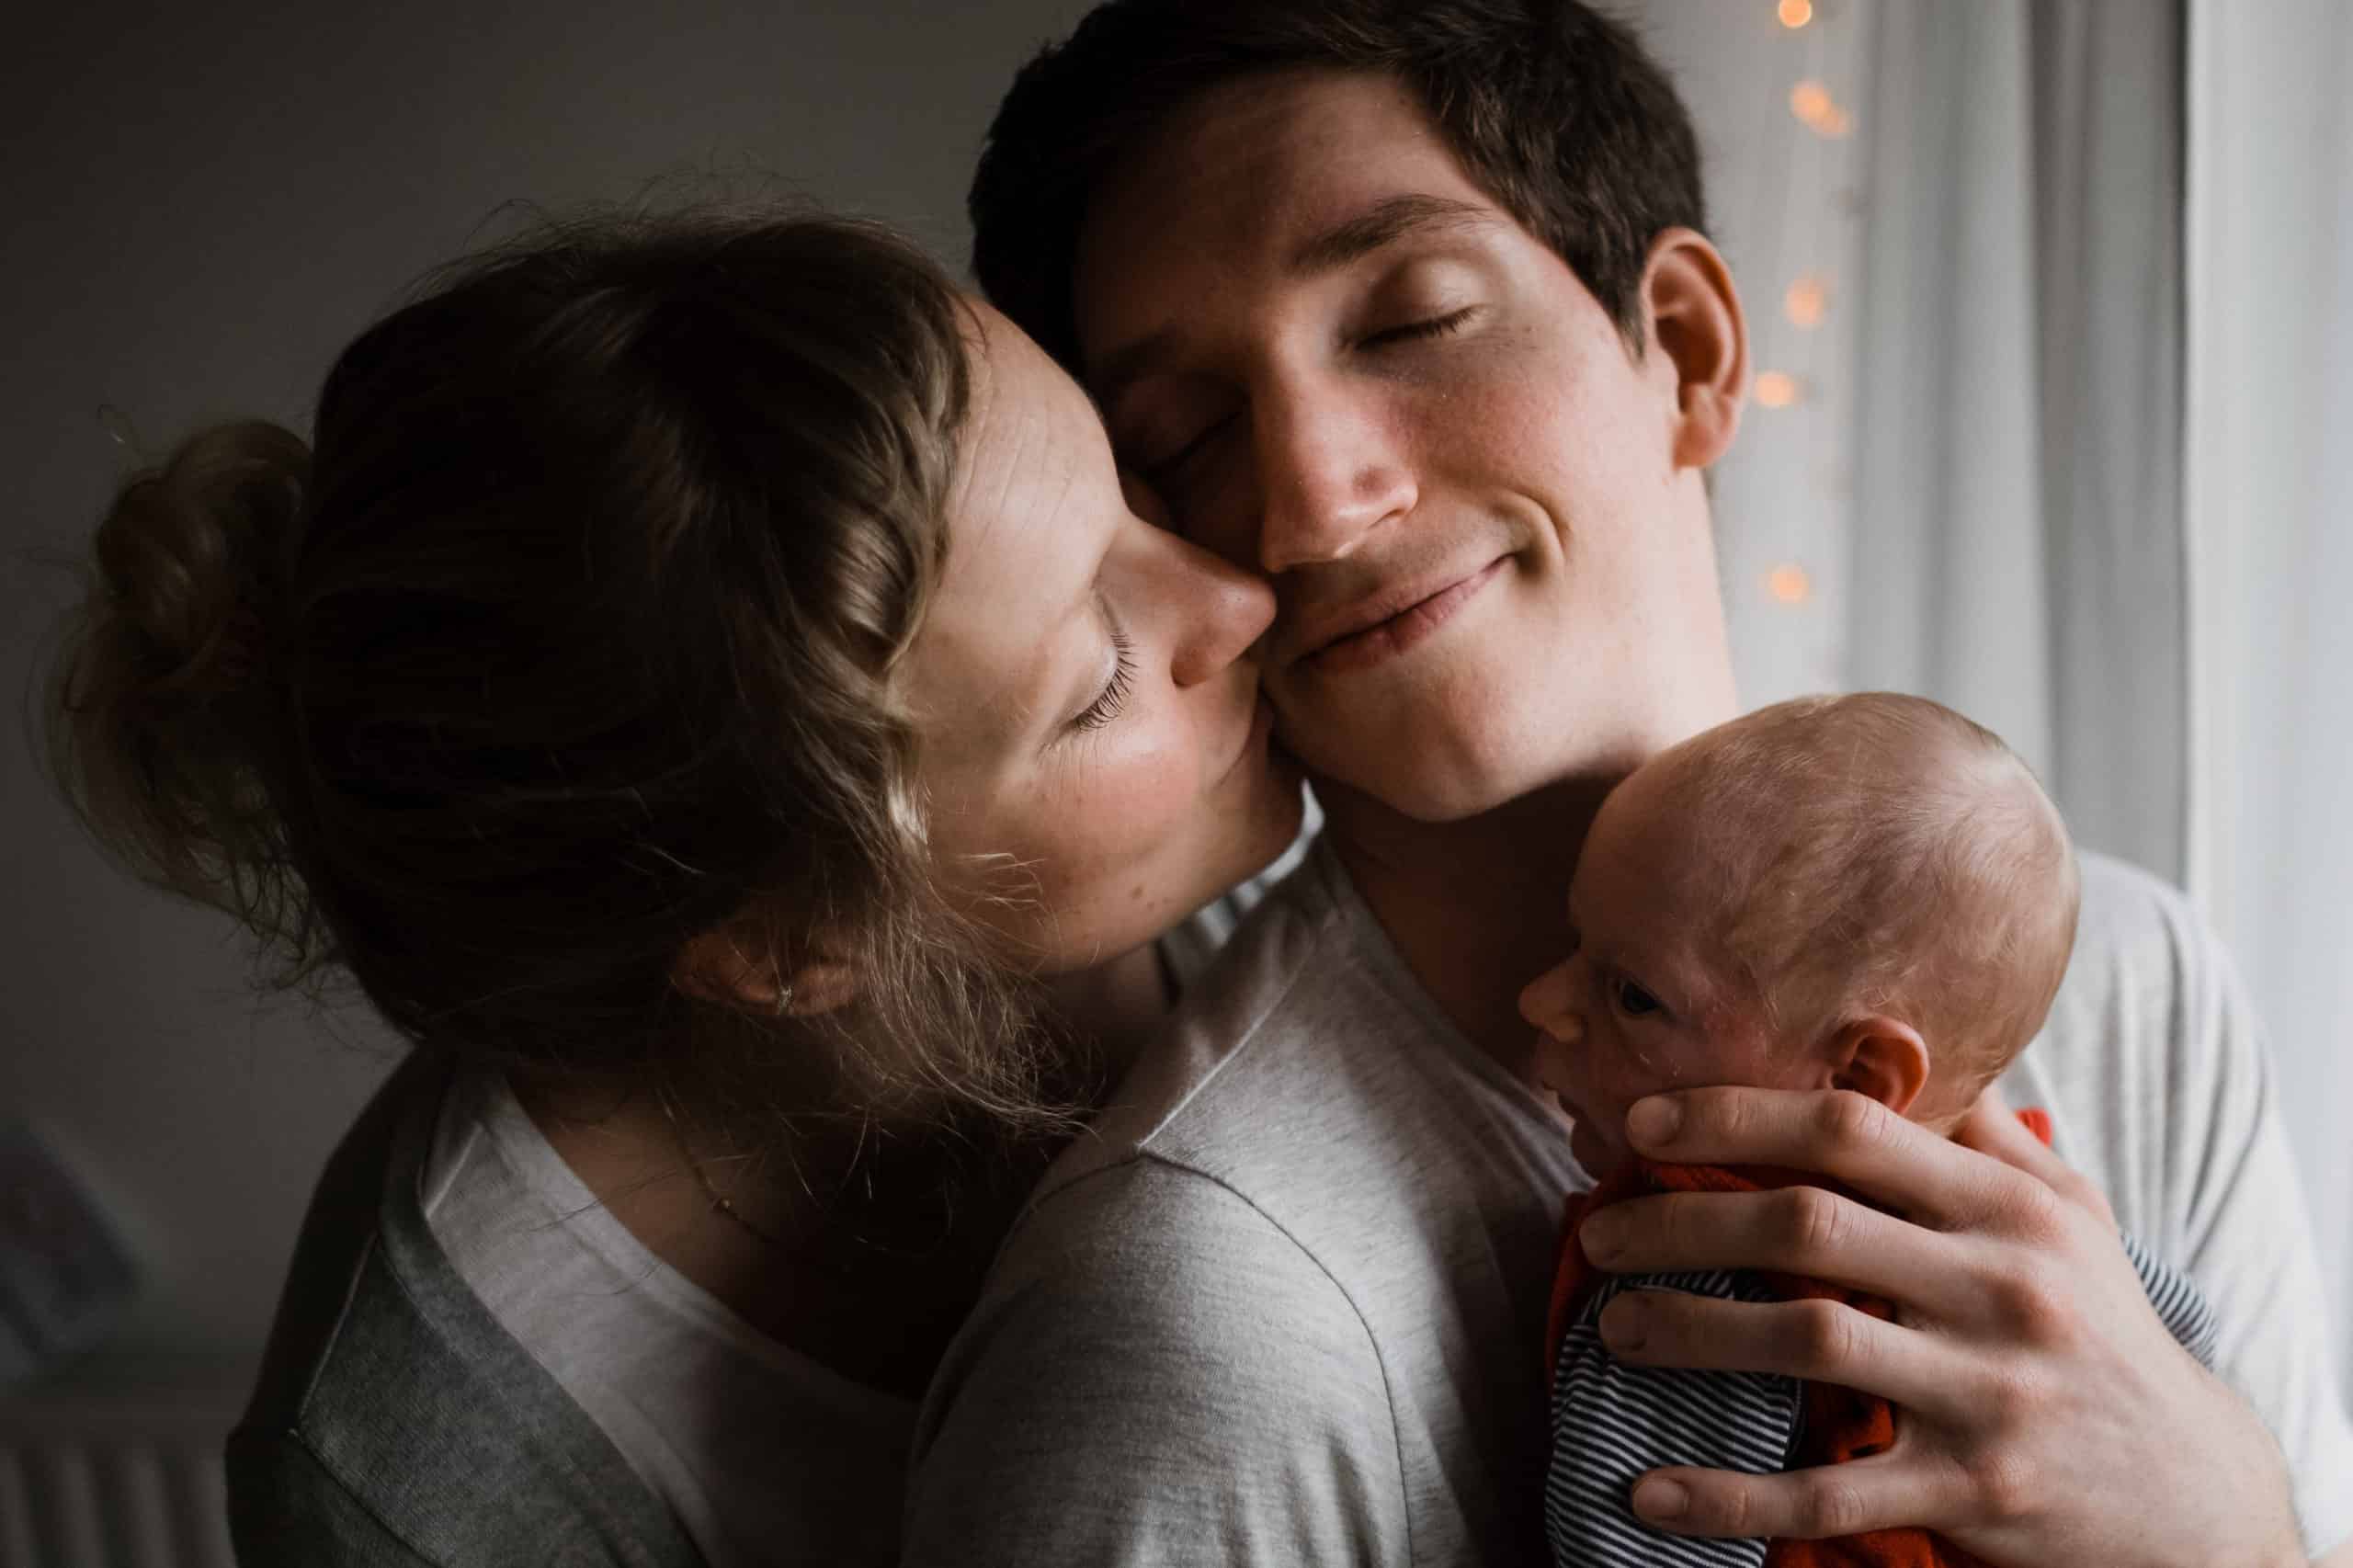 vor einem Fenster in einer Wohnung steht ein Mann, er hat ein Baby auf dem Arm, er hält seine Hand an den Kopf des Baby, er neigt seinen Kopf zu der Frau, die neben ihm steht, die Frau küsst ihn neben seinen Mund, beide haben geschlossene Augen